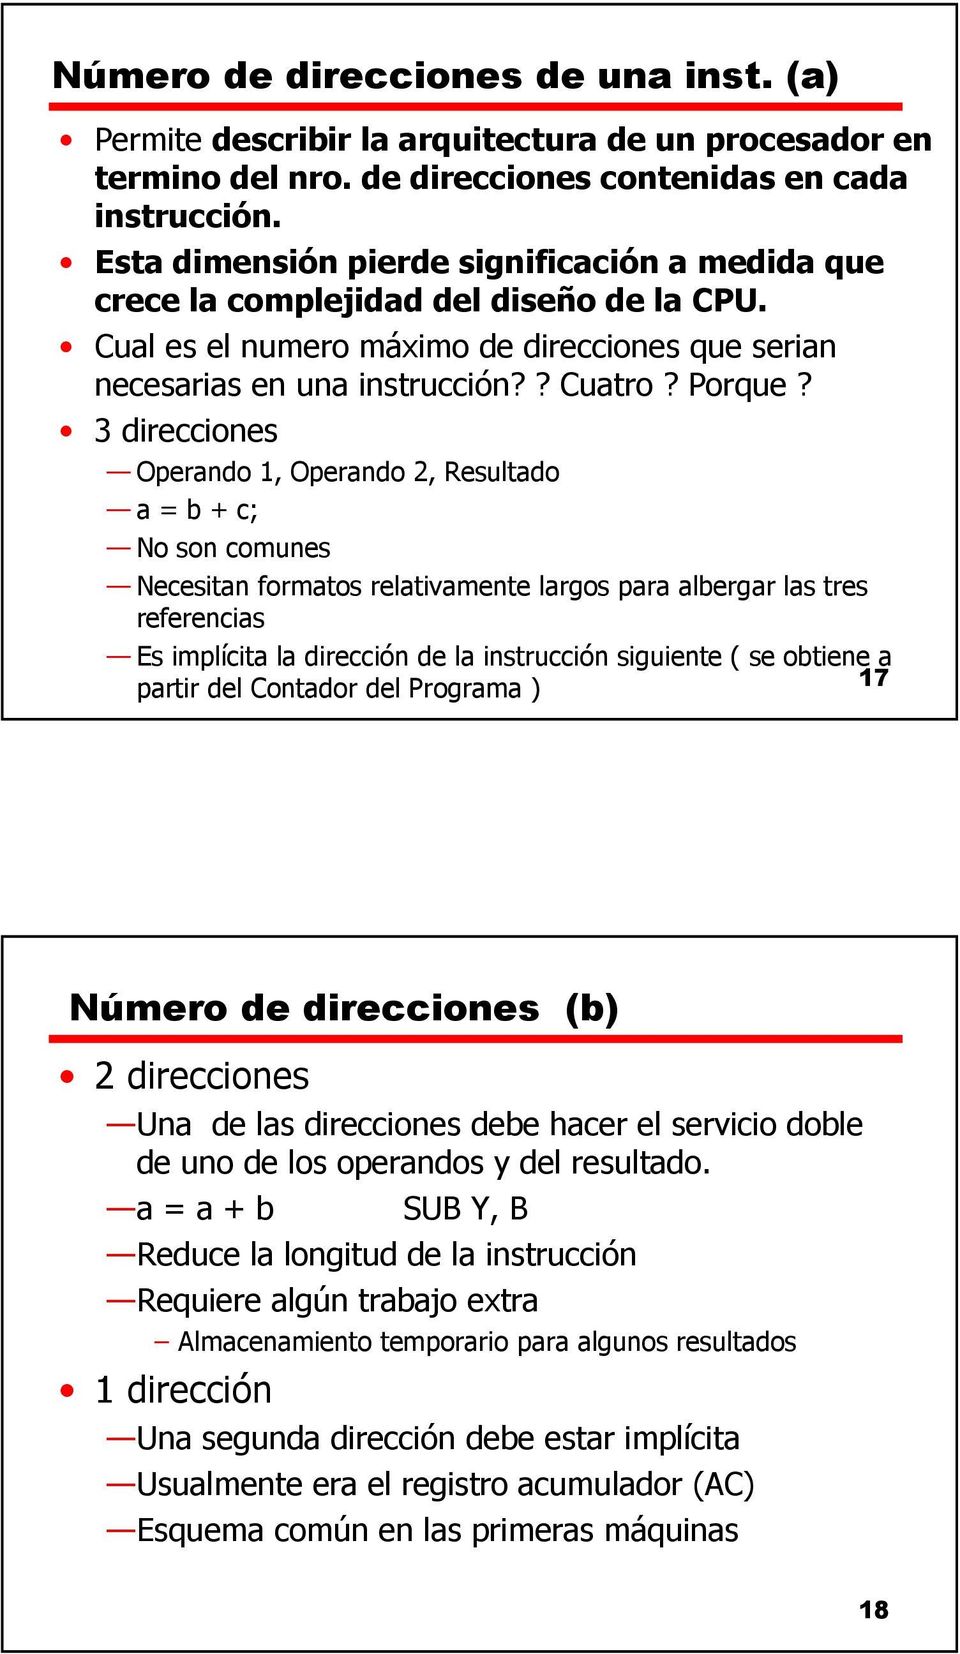 3 direcciones Operando 1, Operando 2, Resultado a = b + c; No son comunes Necesitan formatos relativamente largos para albergar las tres referencias Es implícita la dirección de la instrucción